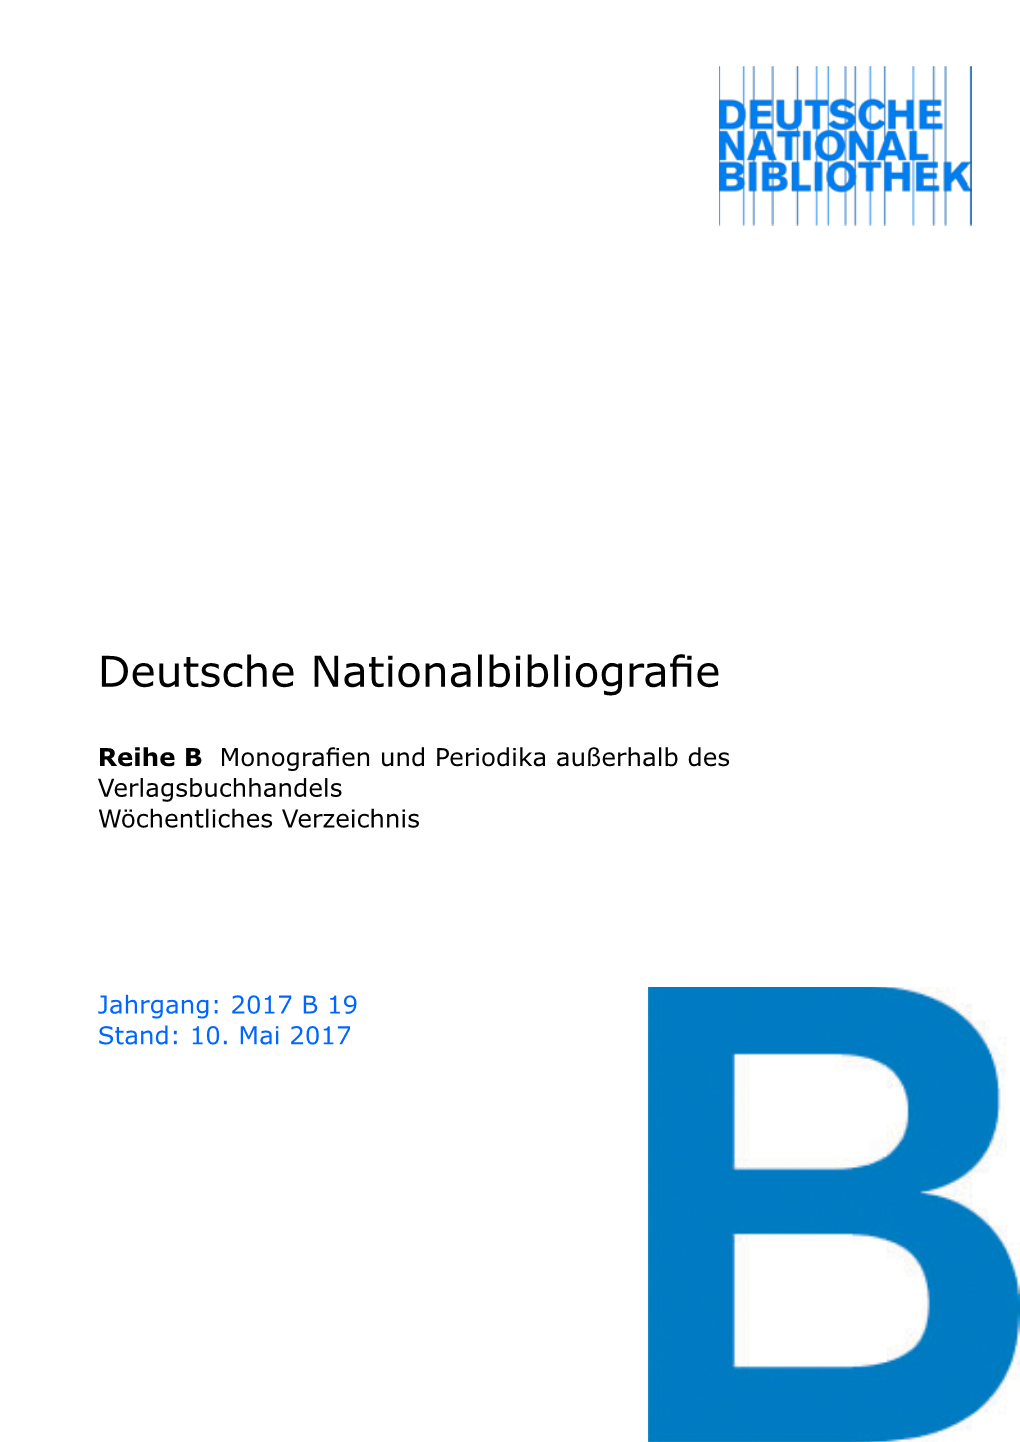 Deutsche Nationalbibliografie 2017 B 19